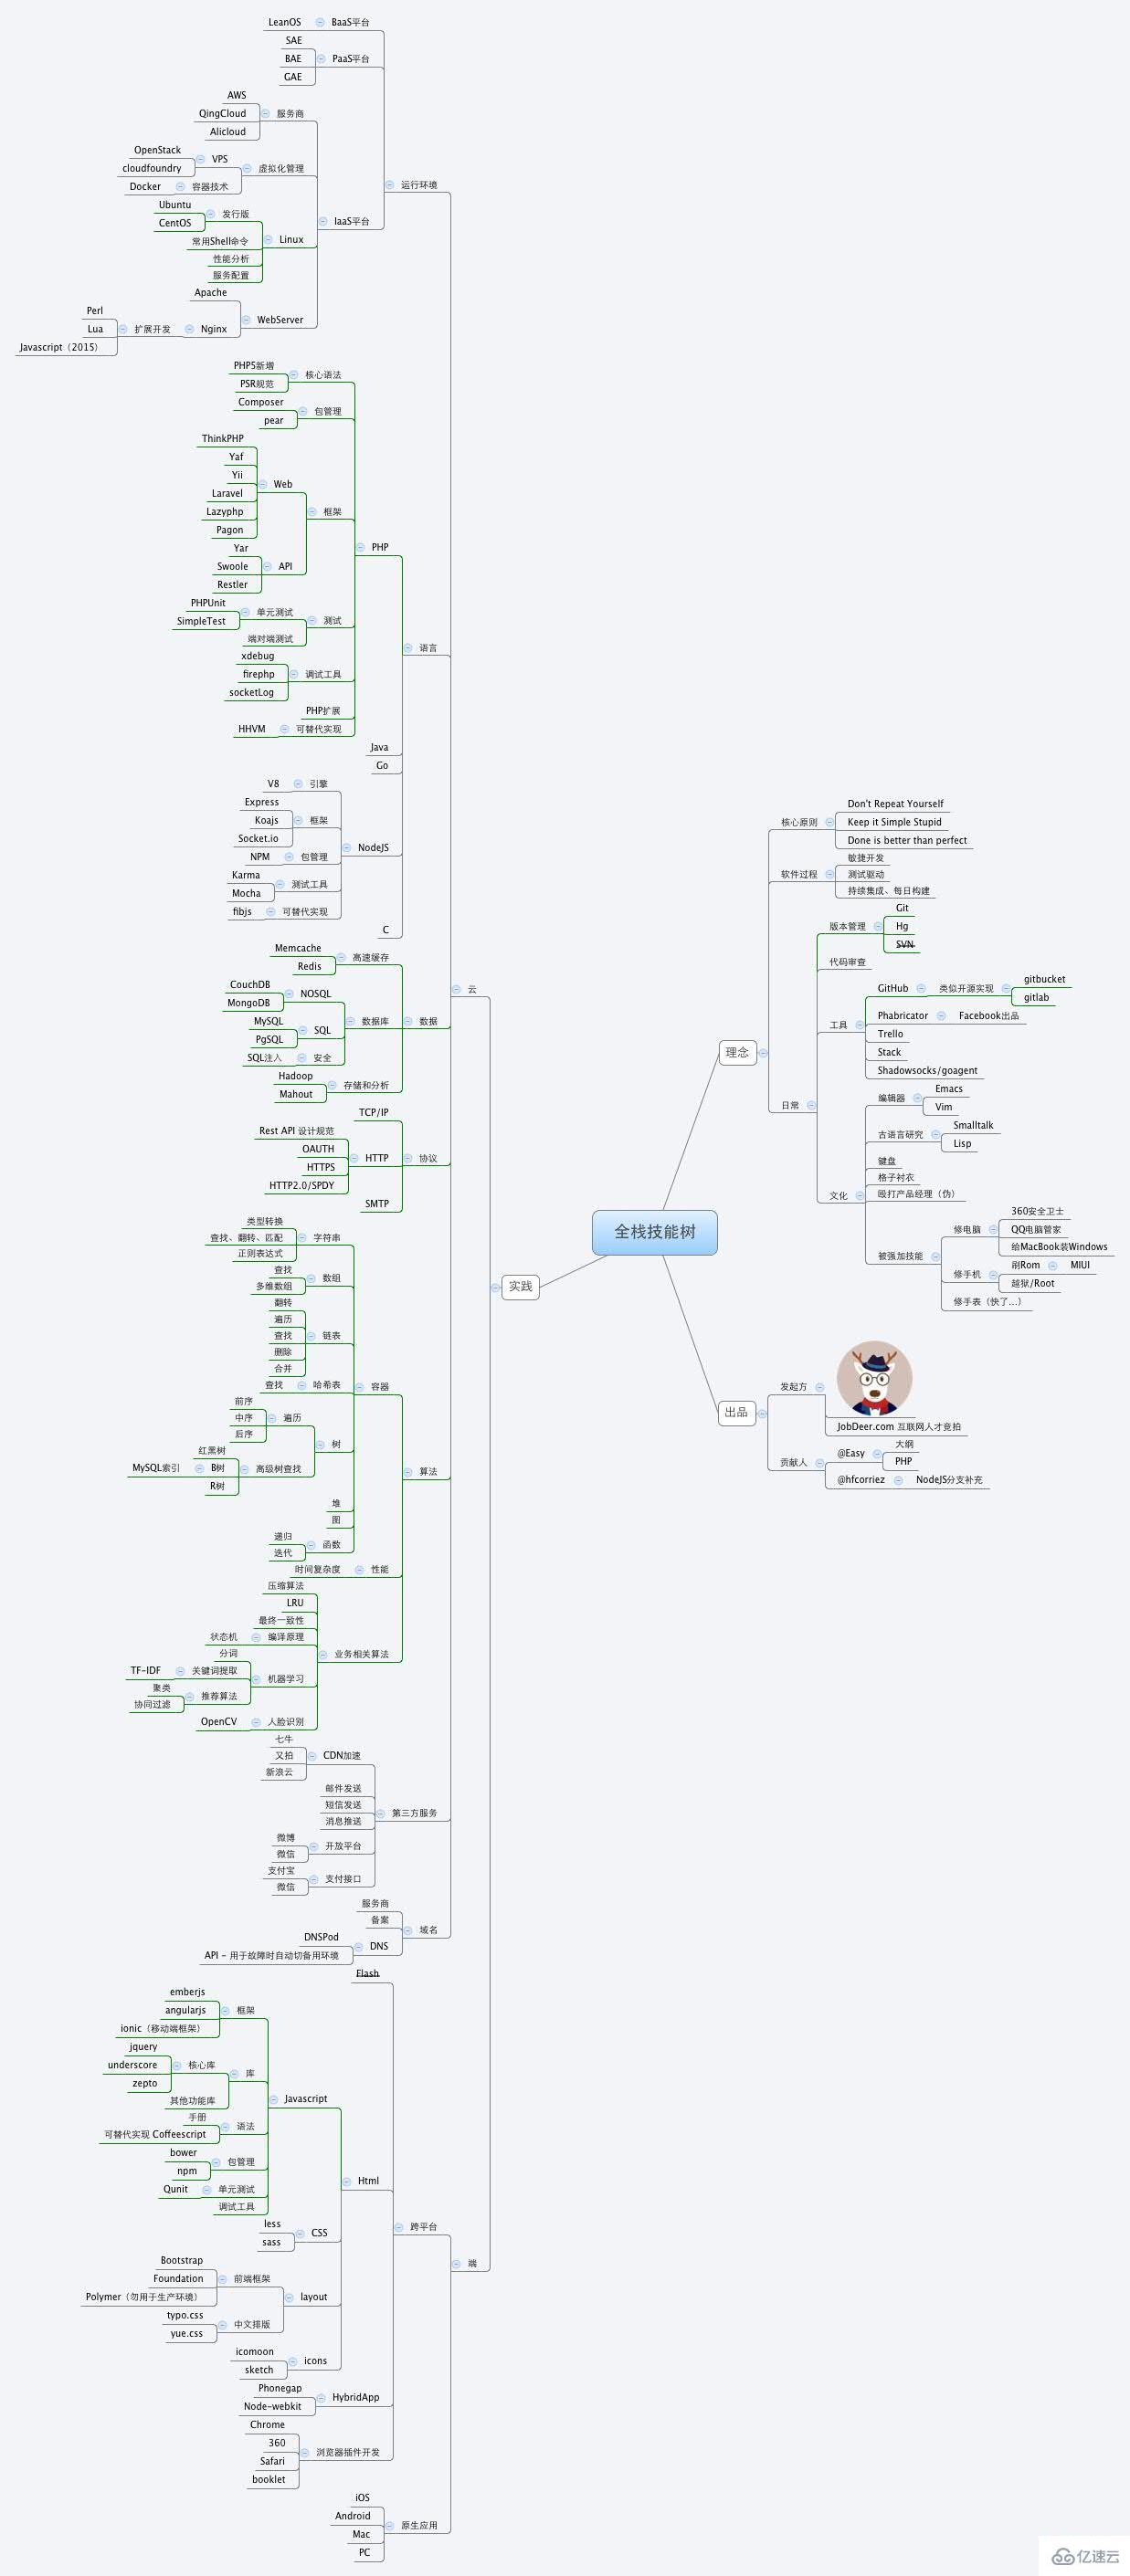 PHP程序员画的 “全栈工程师技能树” 思维导图